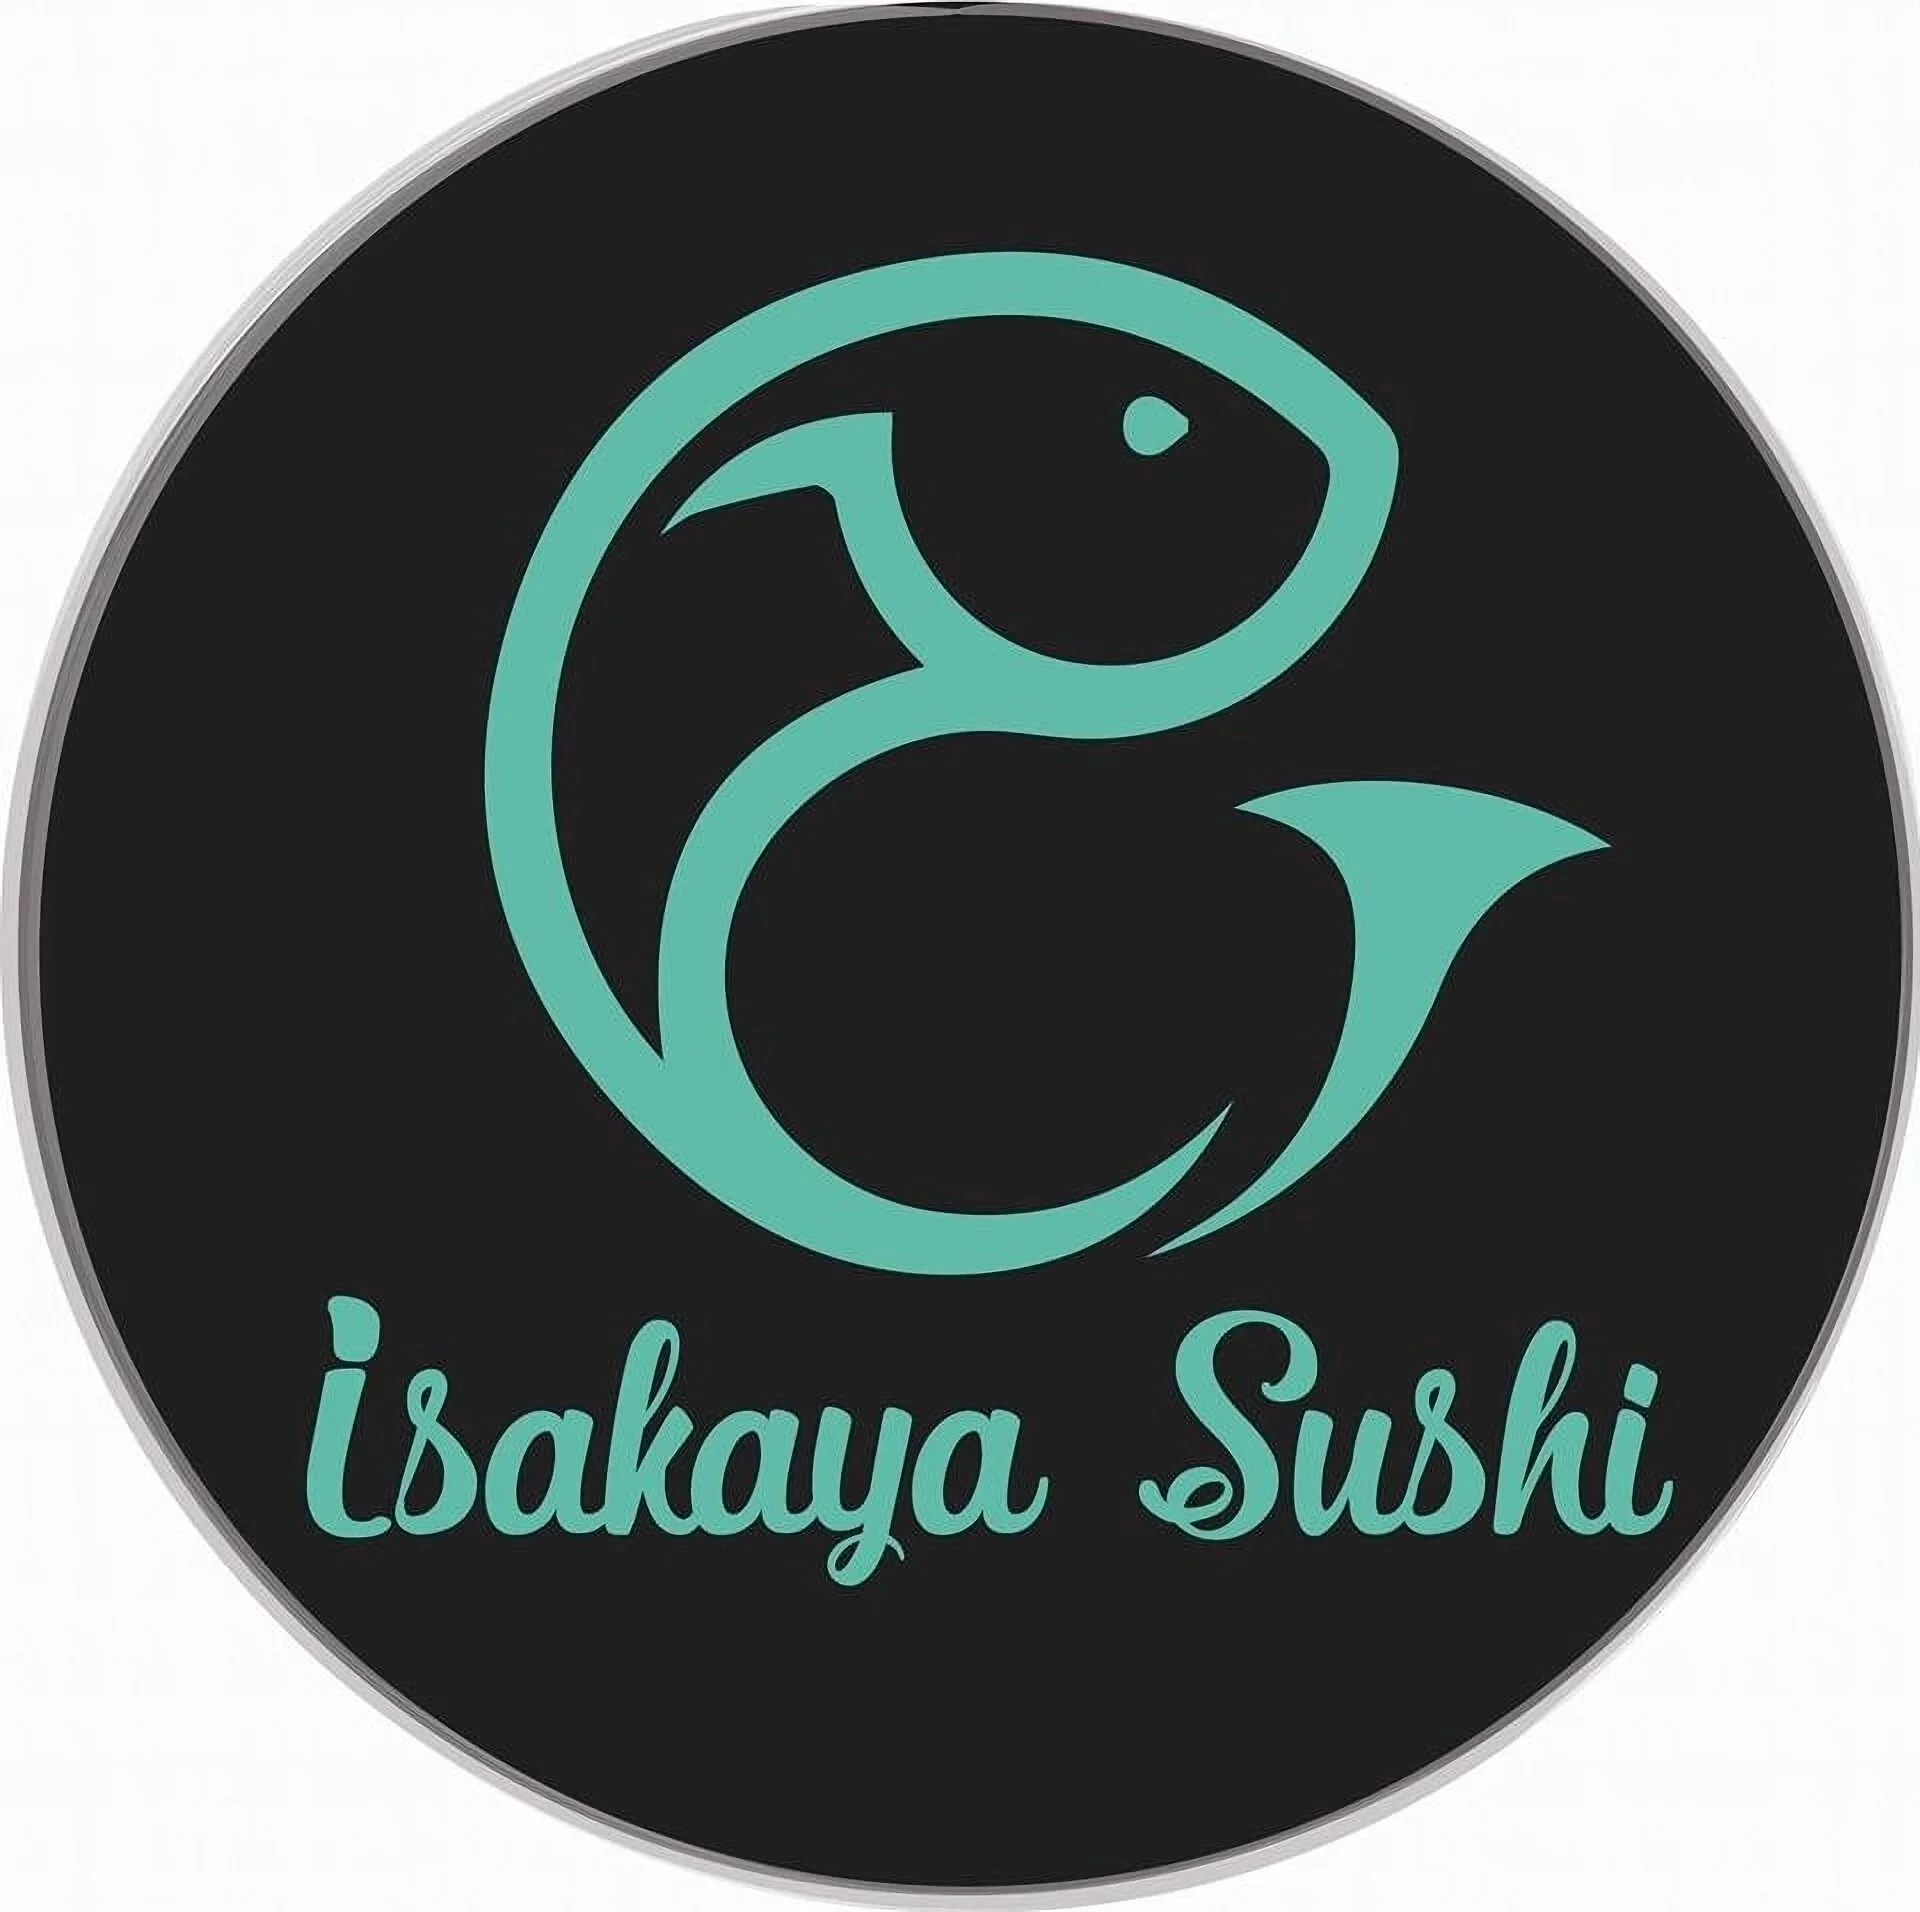 Restaurantes-isakaya-sushi-17784